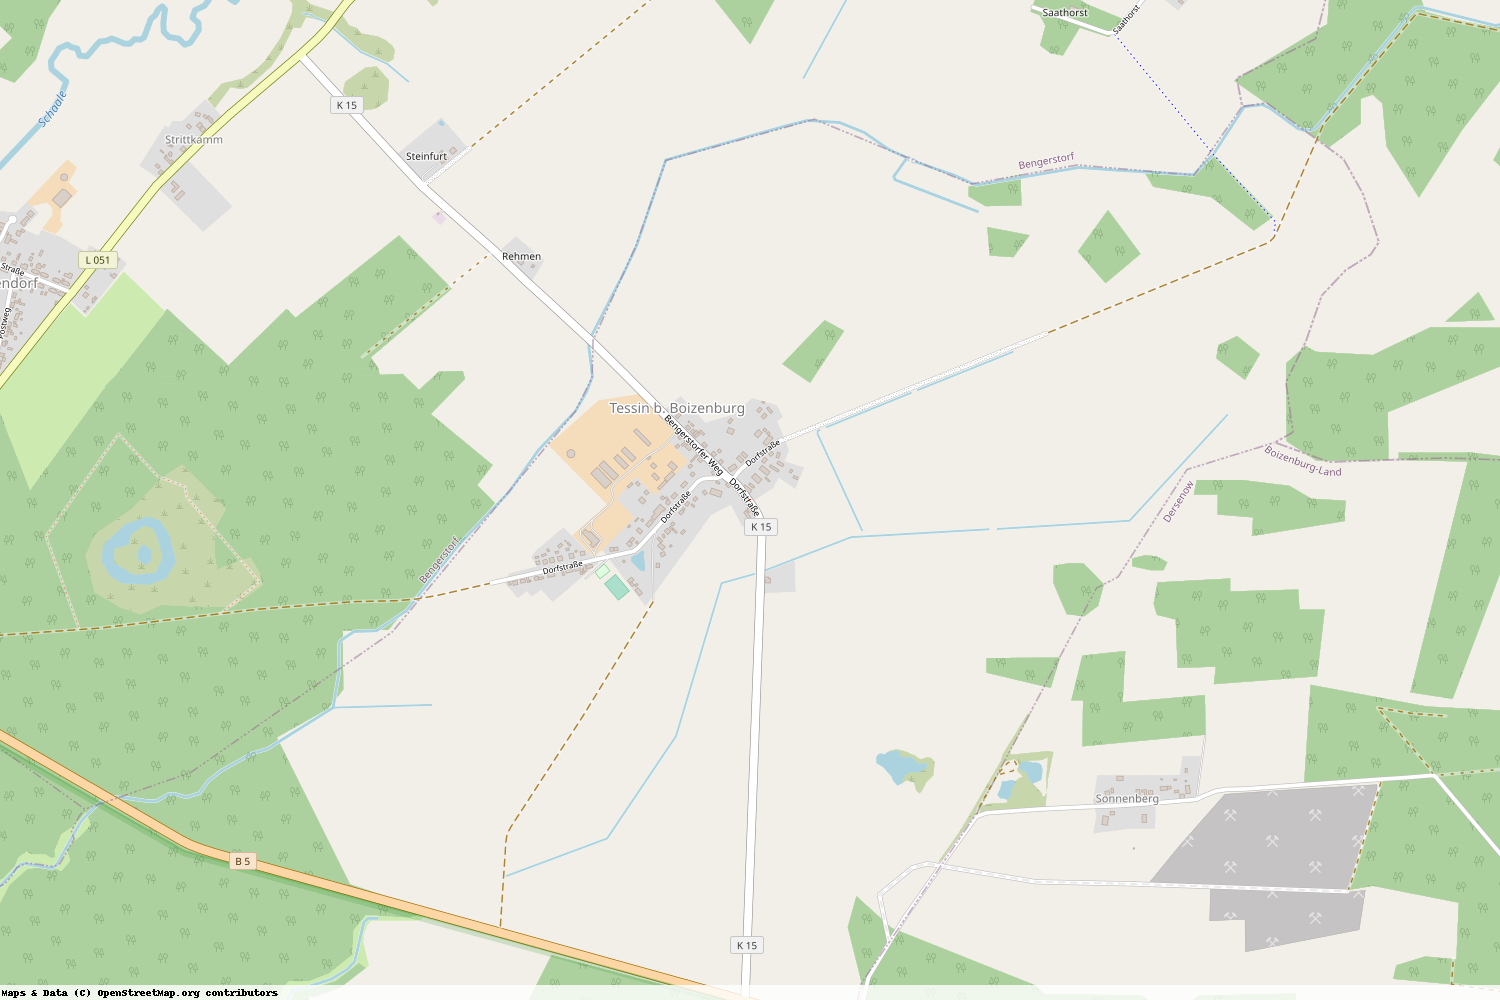 Ist gerade Stromausfall in Mecklenburg-Vorpommern - Ludwigslust-Parchim - Tessin b. Boizenburg?